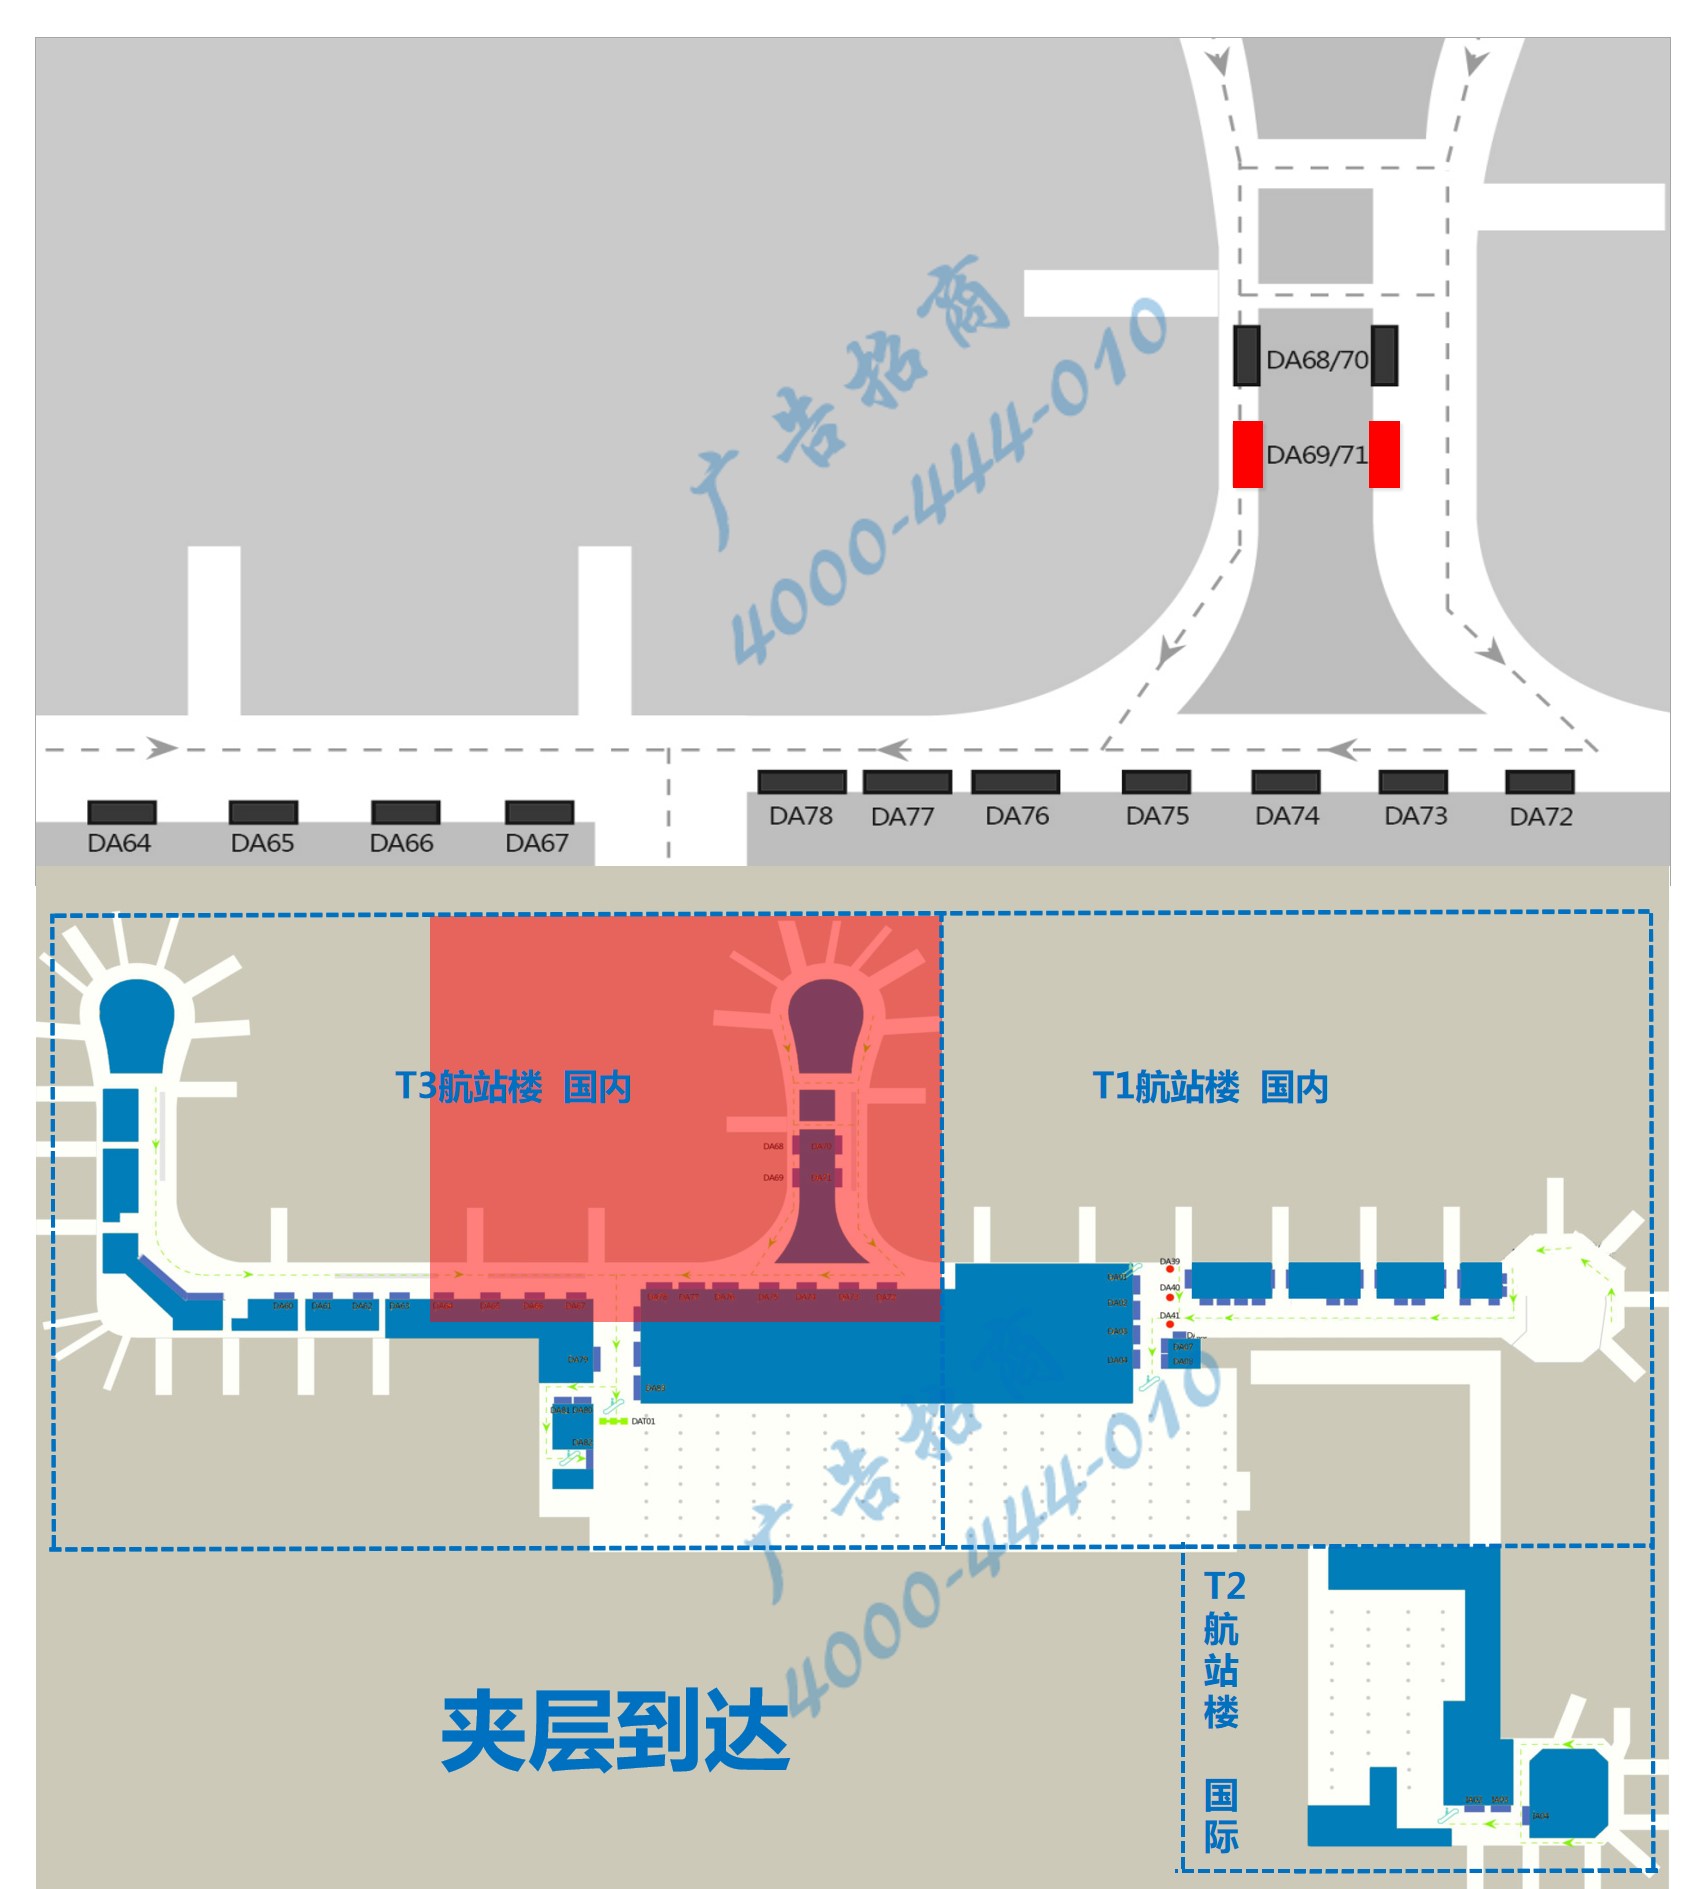 杭州机场广告-T3到达中指廊灯箱DA69/71点位图